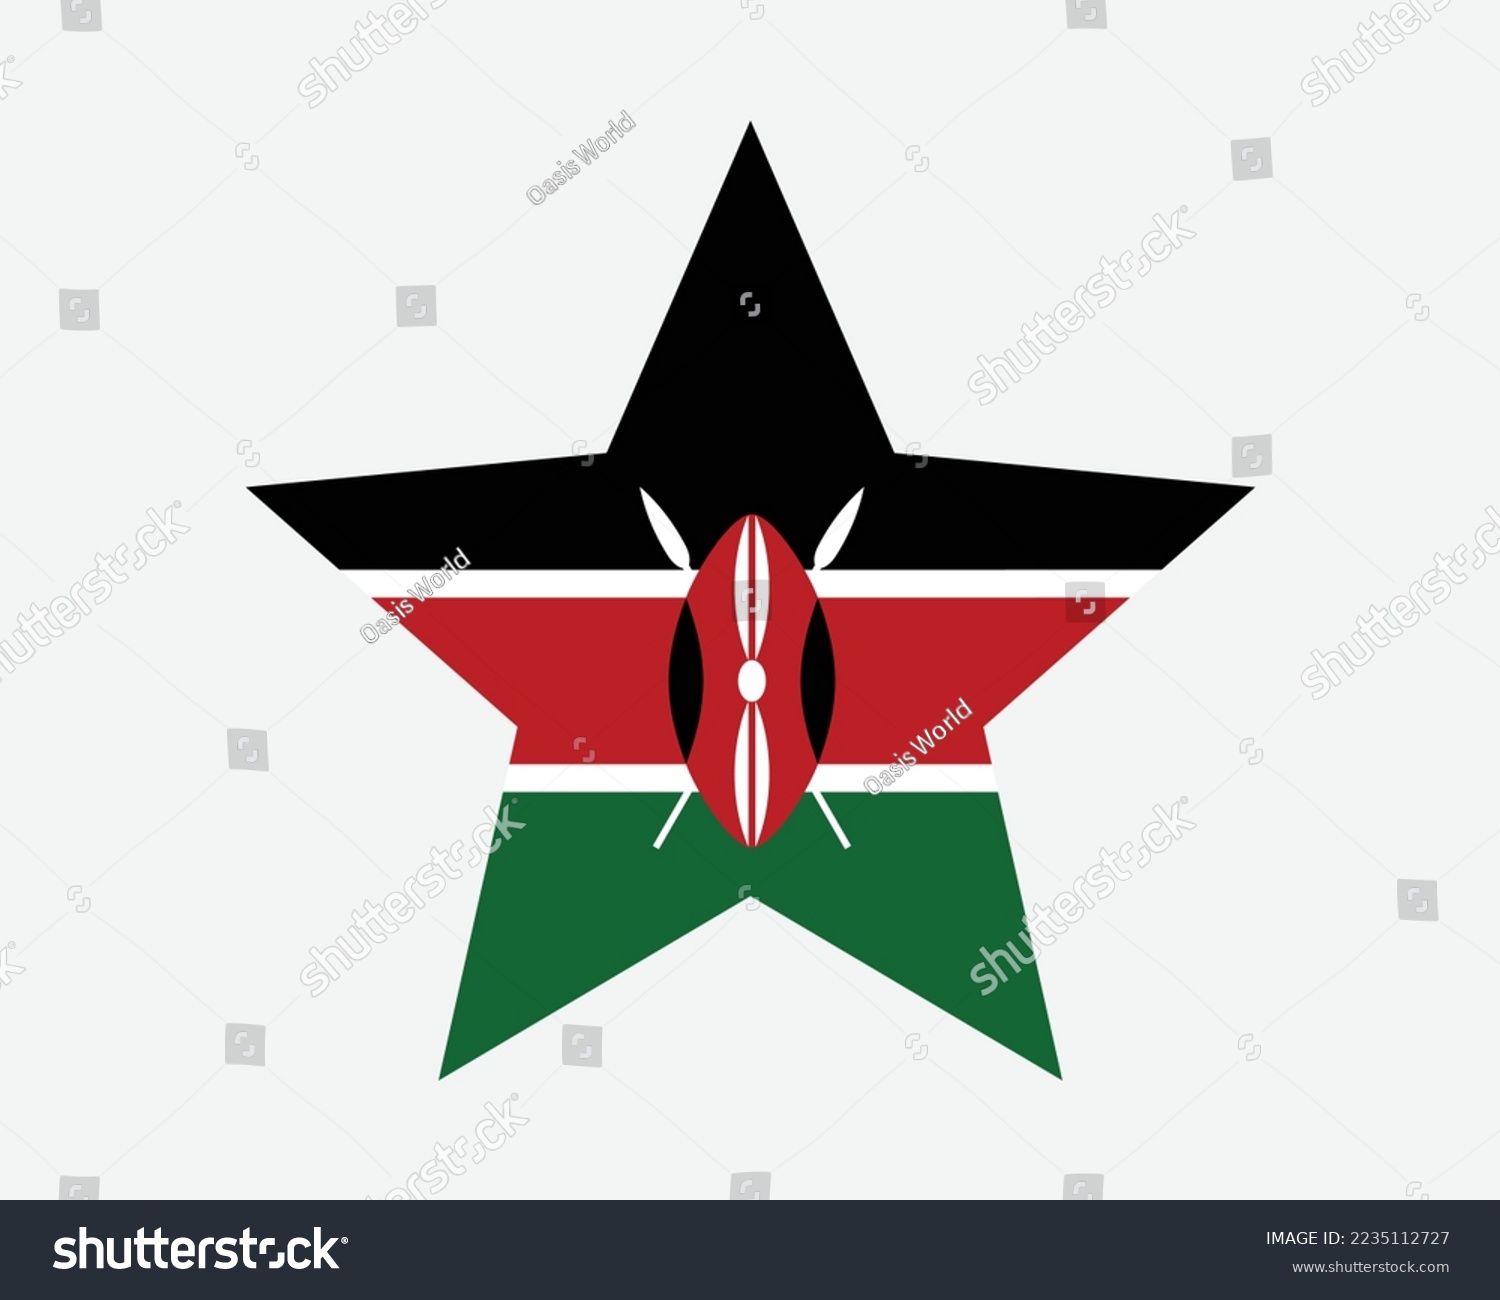 SVG of Kenya Star Flag. Kenyan Star Shape Flag. Country National Banner Icon Symbol Vector Flat Artwork Graphic Illustration svg